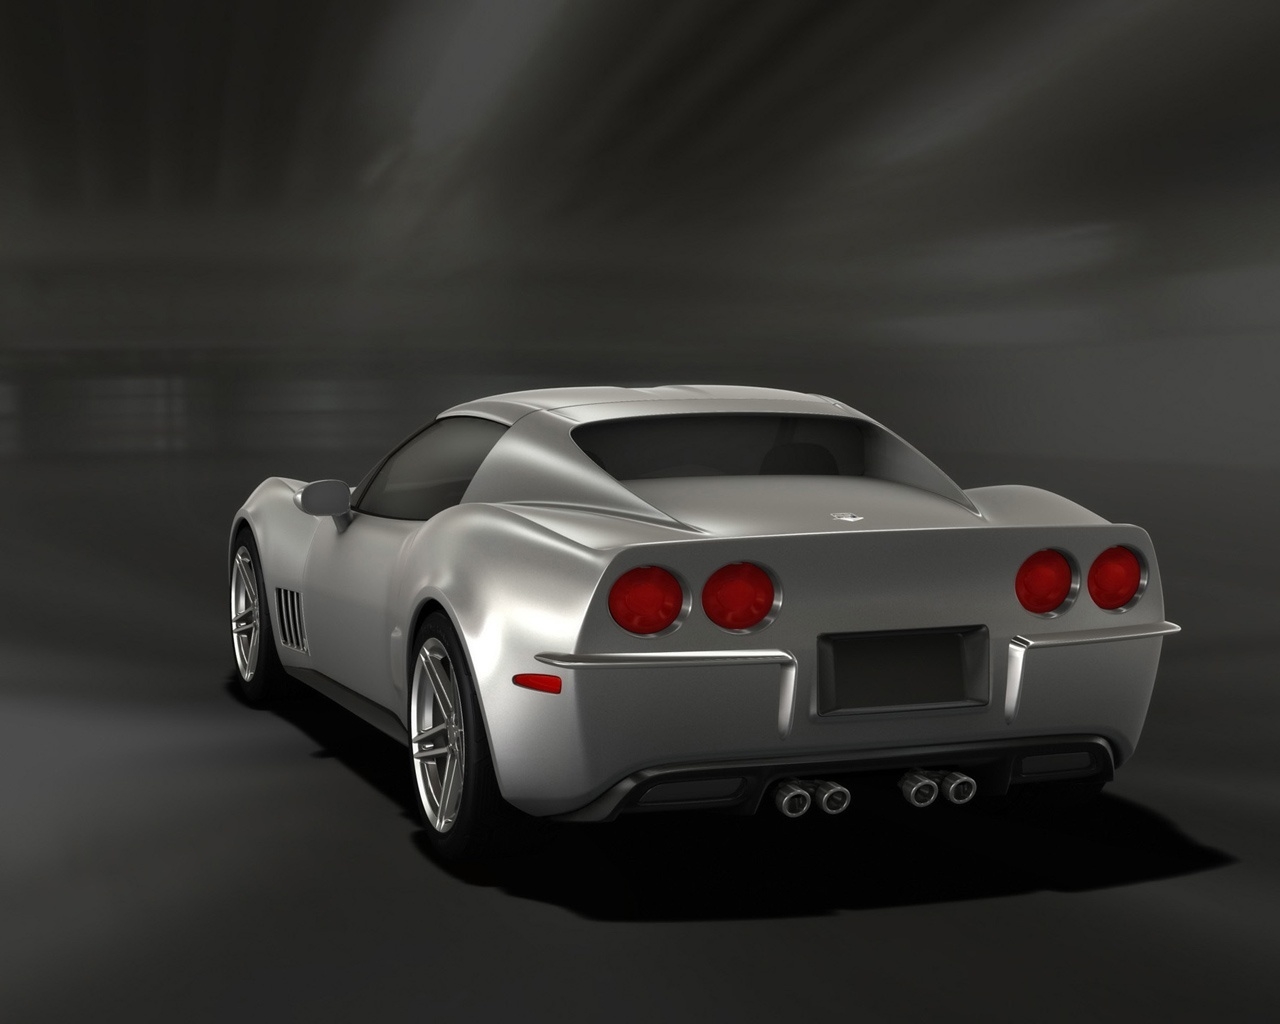 Retro Corvette Stingray Silver Rear Angle 2009 for 1280 x 1024 resolution